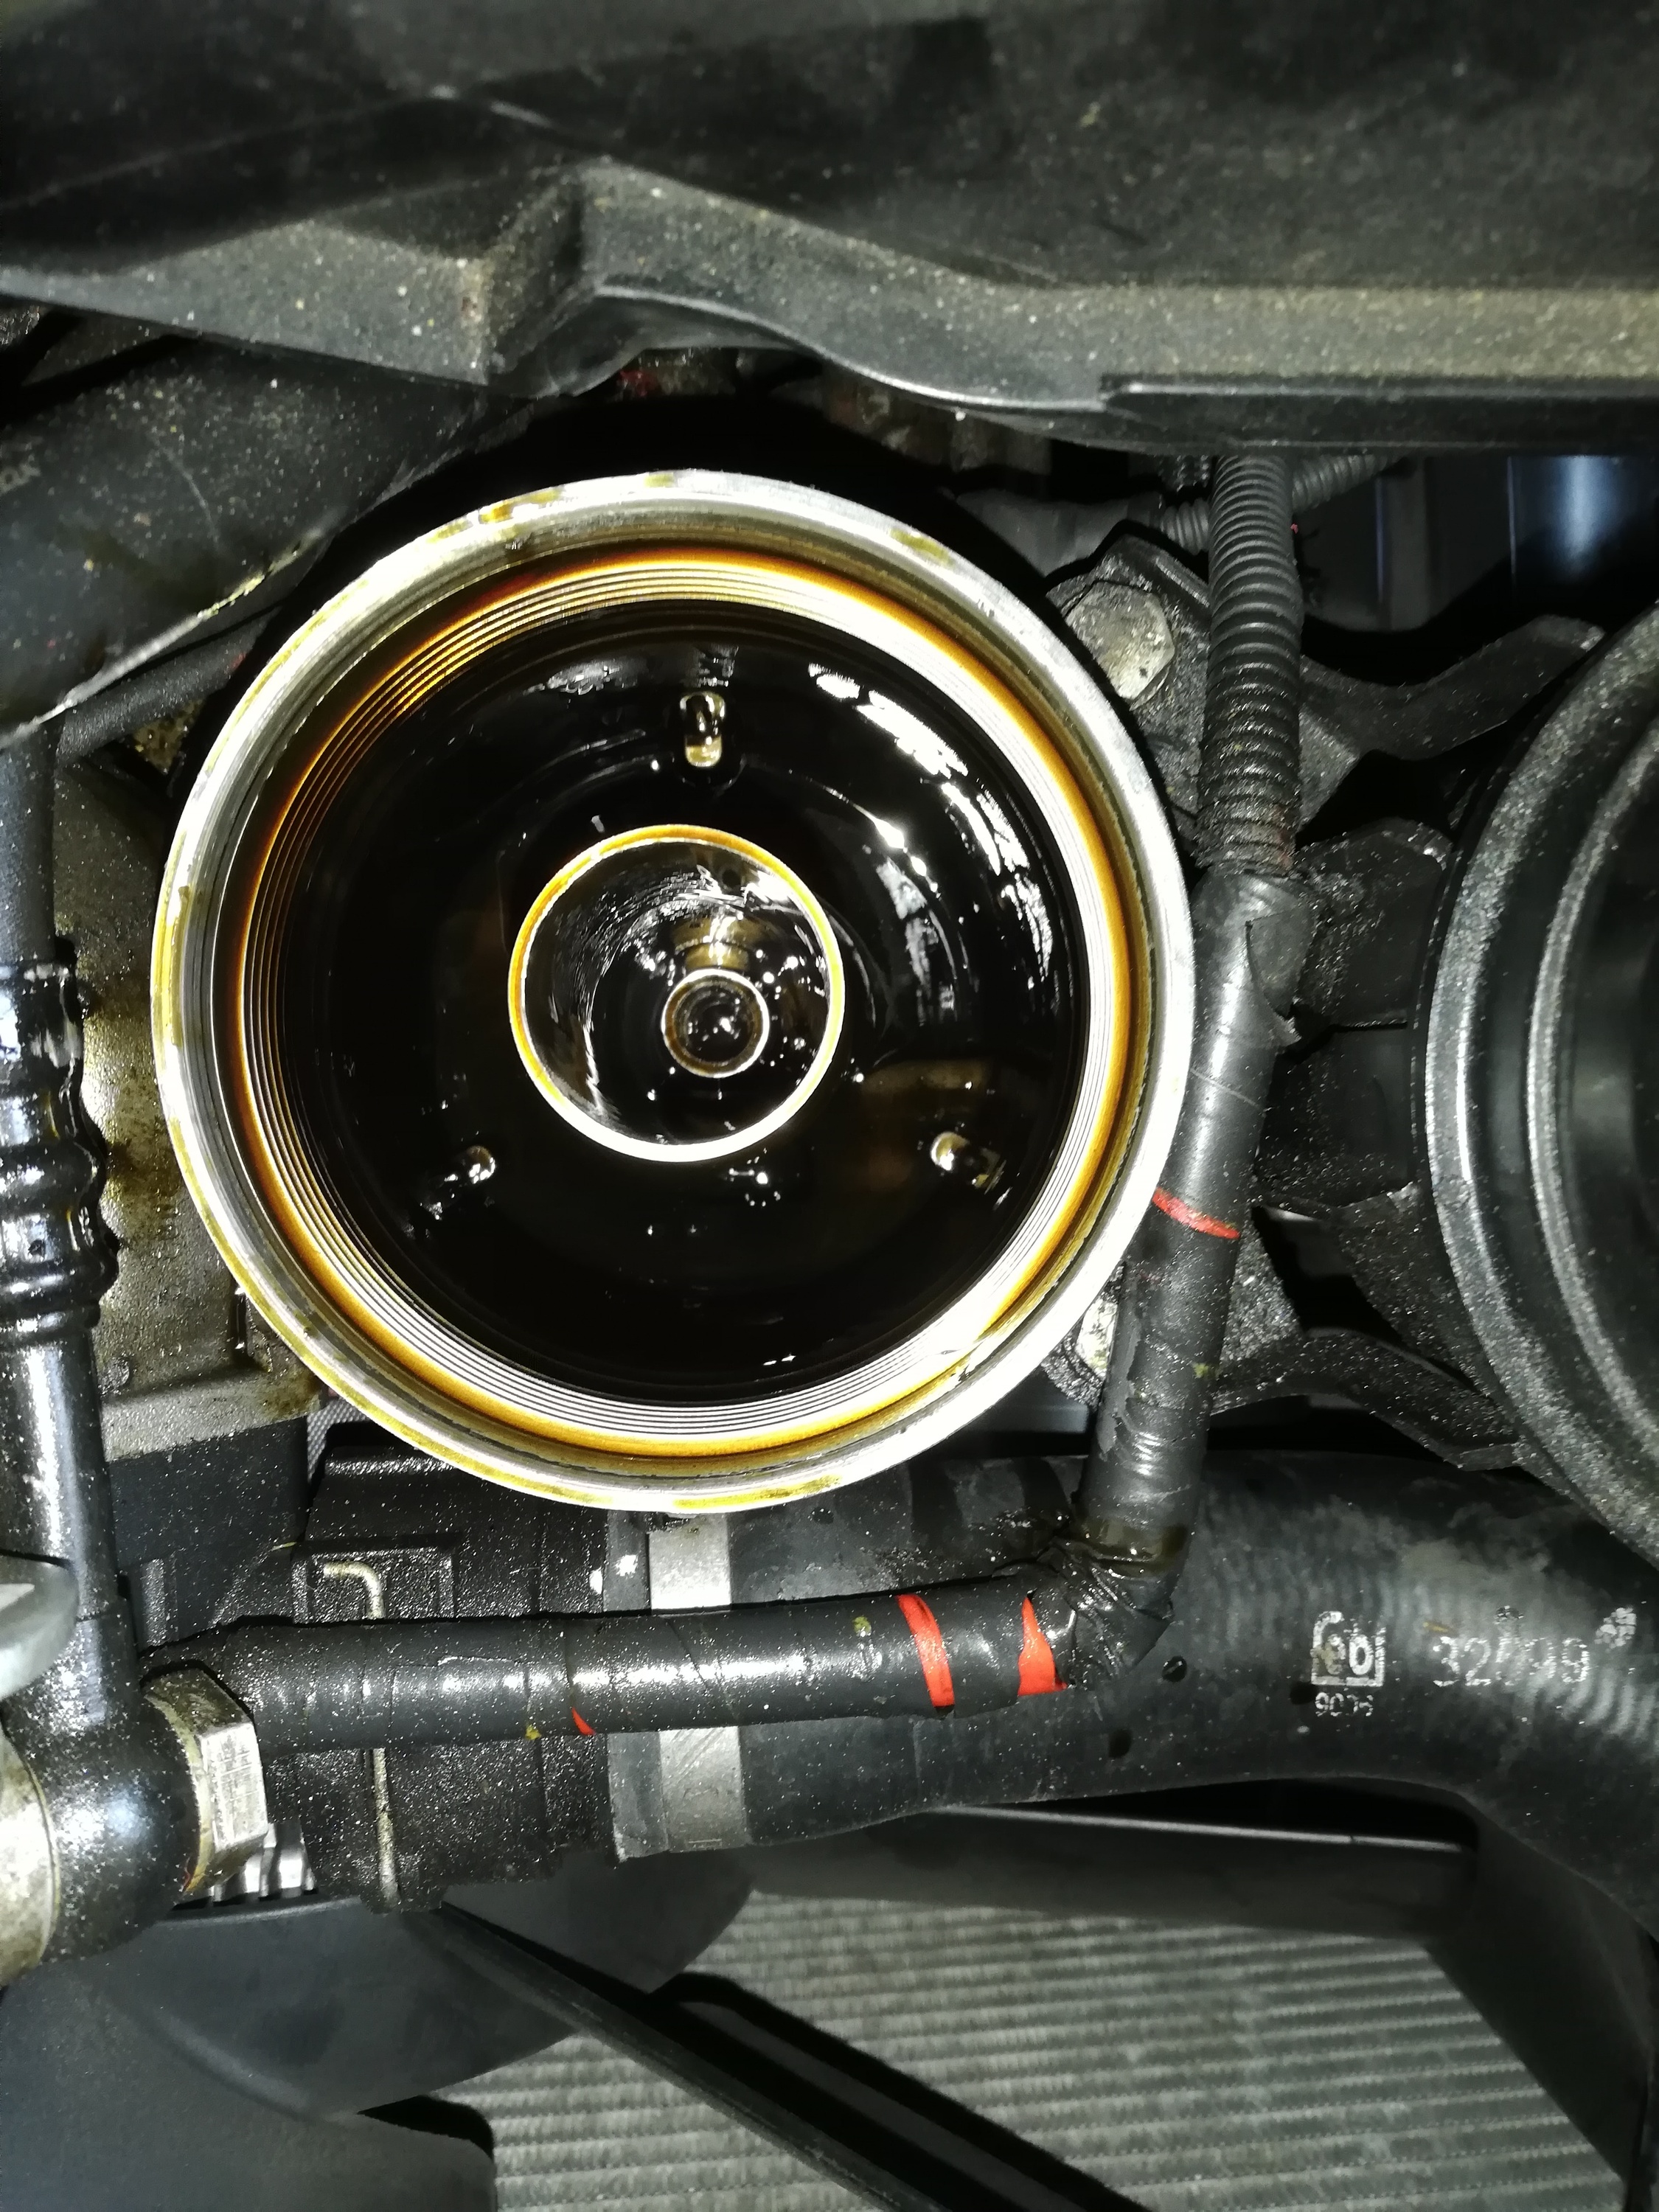 BMW E46 mit M54 Motor, Rote Öllampe flackert im Standgas bei heißem Motor. (Ist manchmal bei Motoren mit hoher Laufleistung)